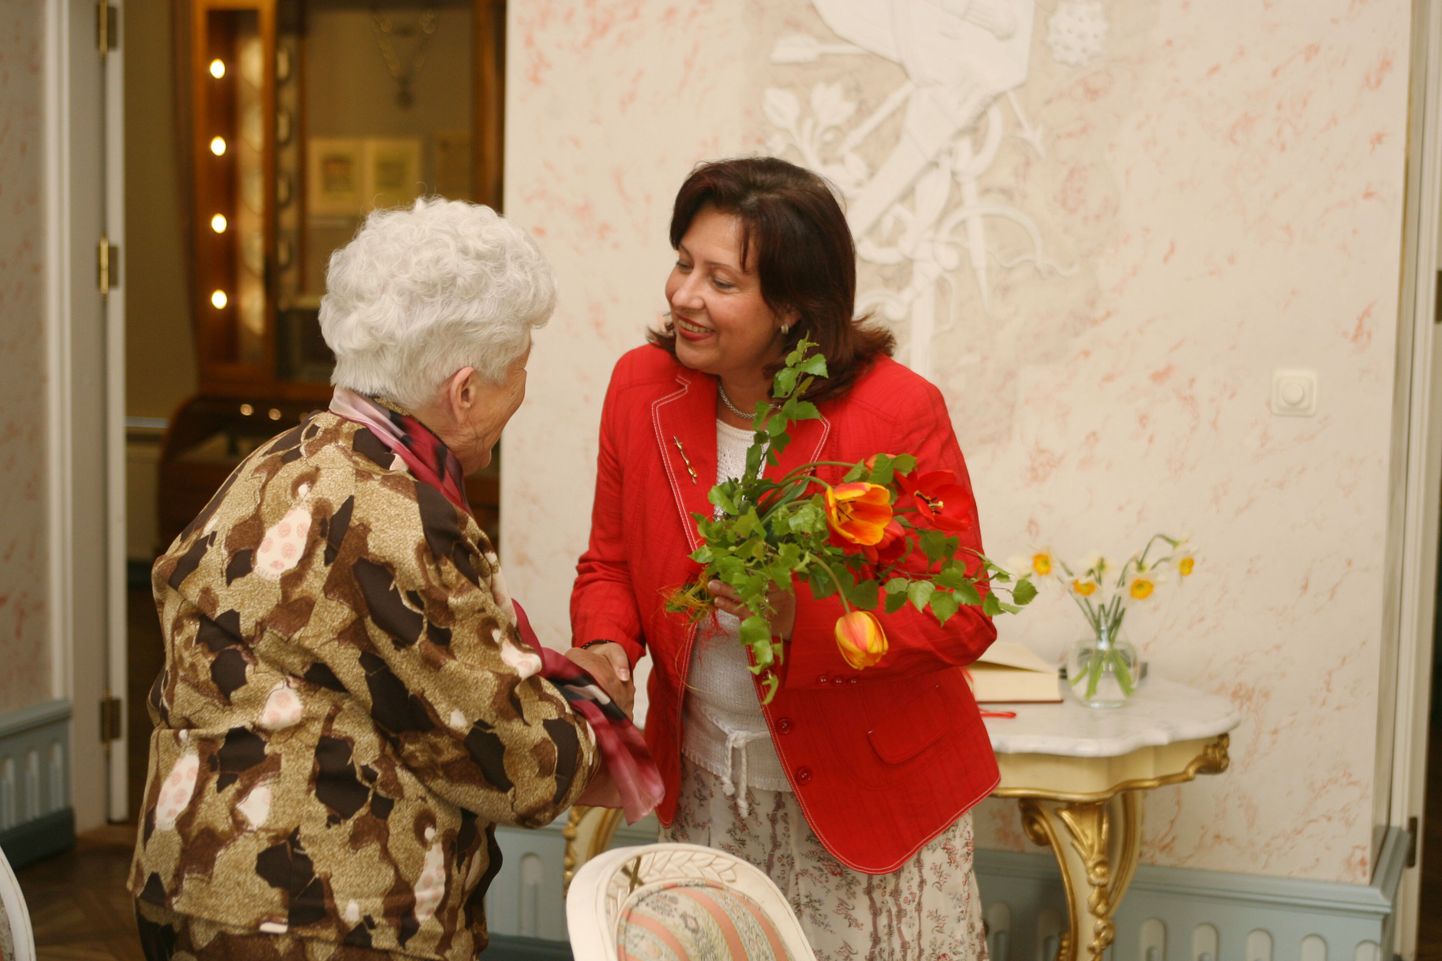 Eesti Ettevõtlike Naiste Assotsiatsiooni Tartu klubi tunnustab üksi lapselapsi kasvatavaid vanavanemaid. Pildil vanaema Aino Krevald, keda tunnustati 2009. aastal.